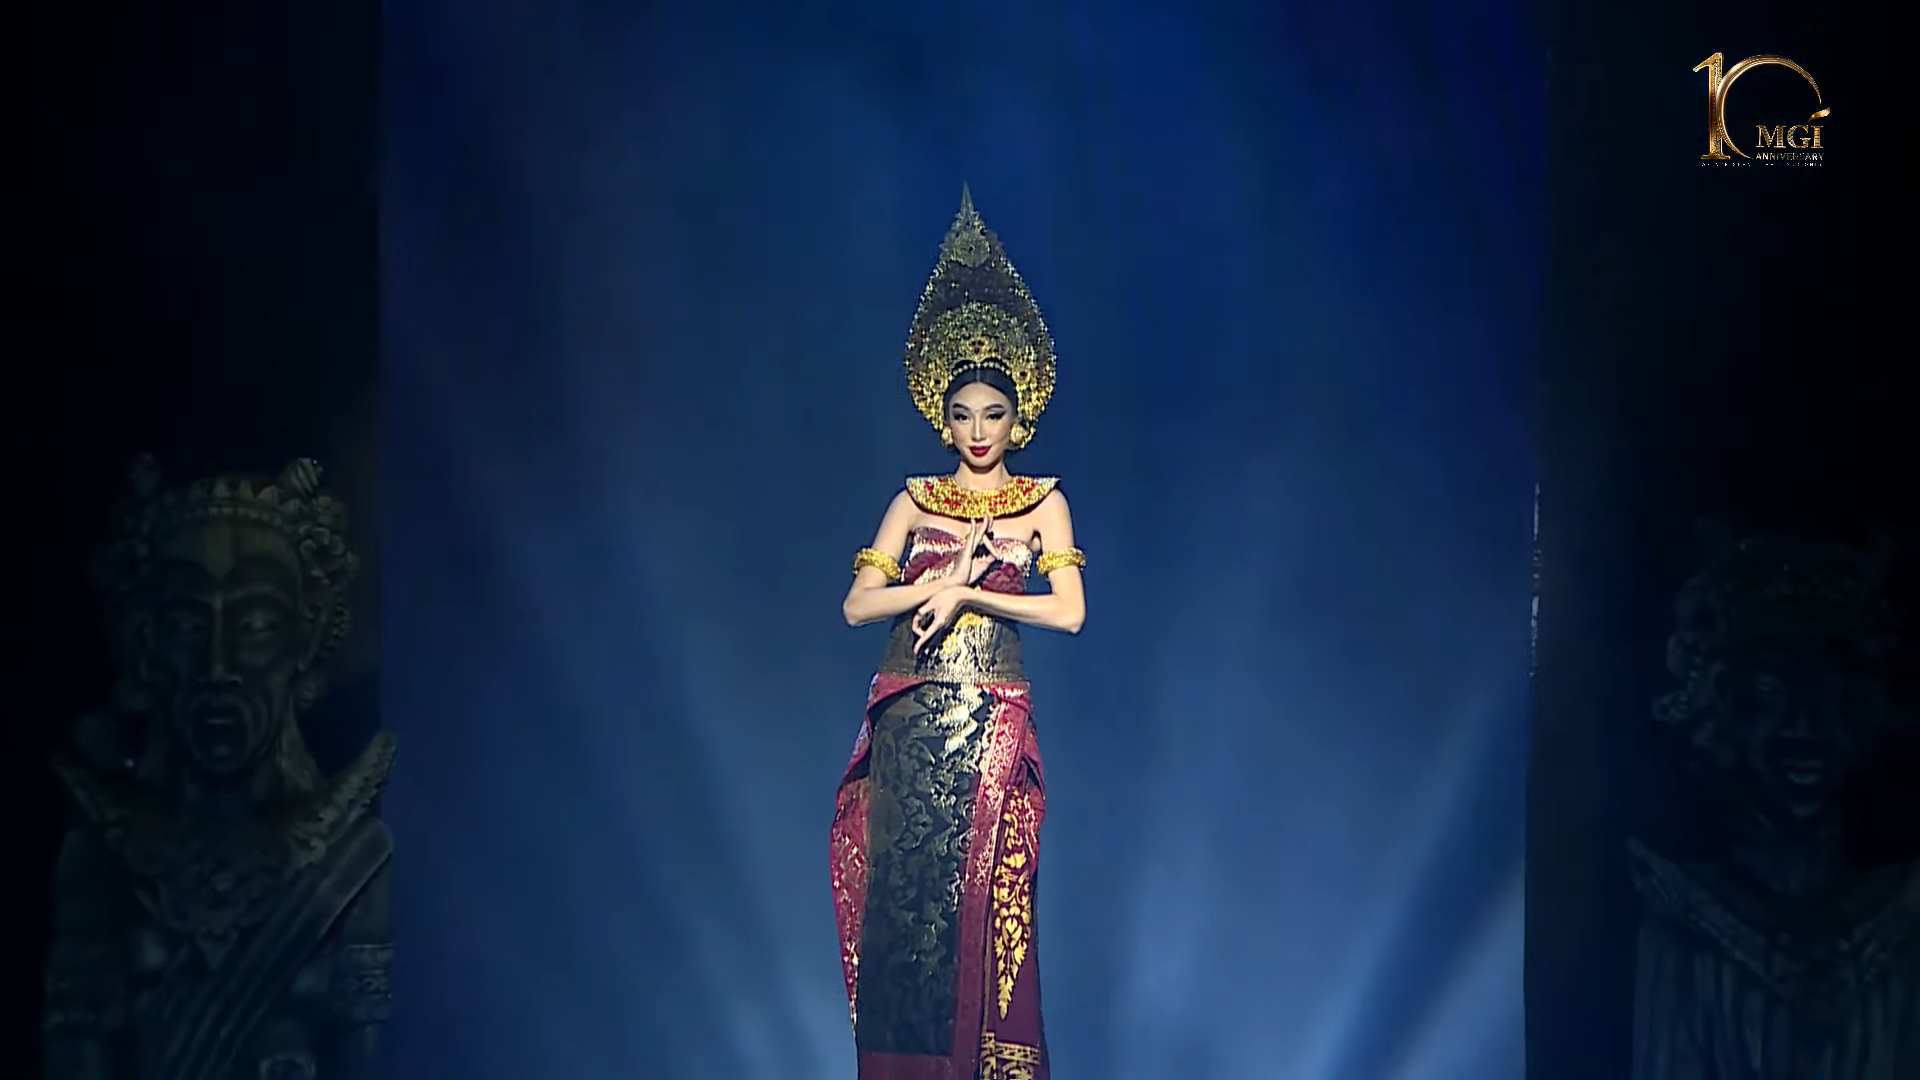 Chưa dừng lại ở đó, Hoa hậu Thùy Tiên xuất hiện như một nữ thần, kết thúc phần thi của các thí sinh cũng trong trang phục truyền thống của Bali. Nhan sắc thăng hạng của nàng Hoa hậu khiến người hâm mộ không khỏi trầm trồ. Ảnh: NVCC.